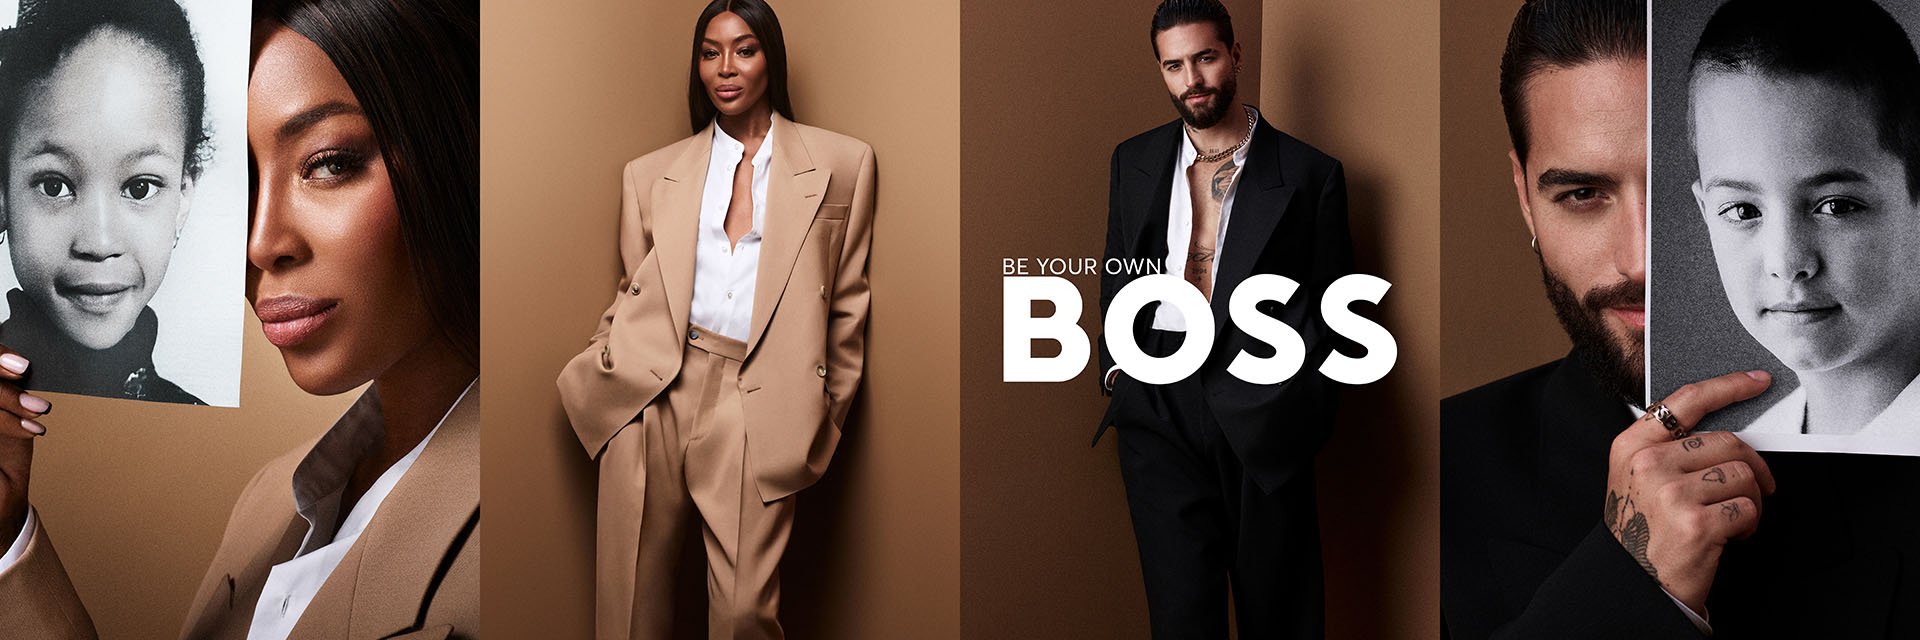 Lernen Sie die Marke Boss kennen